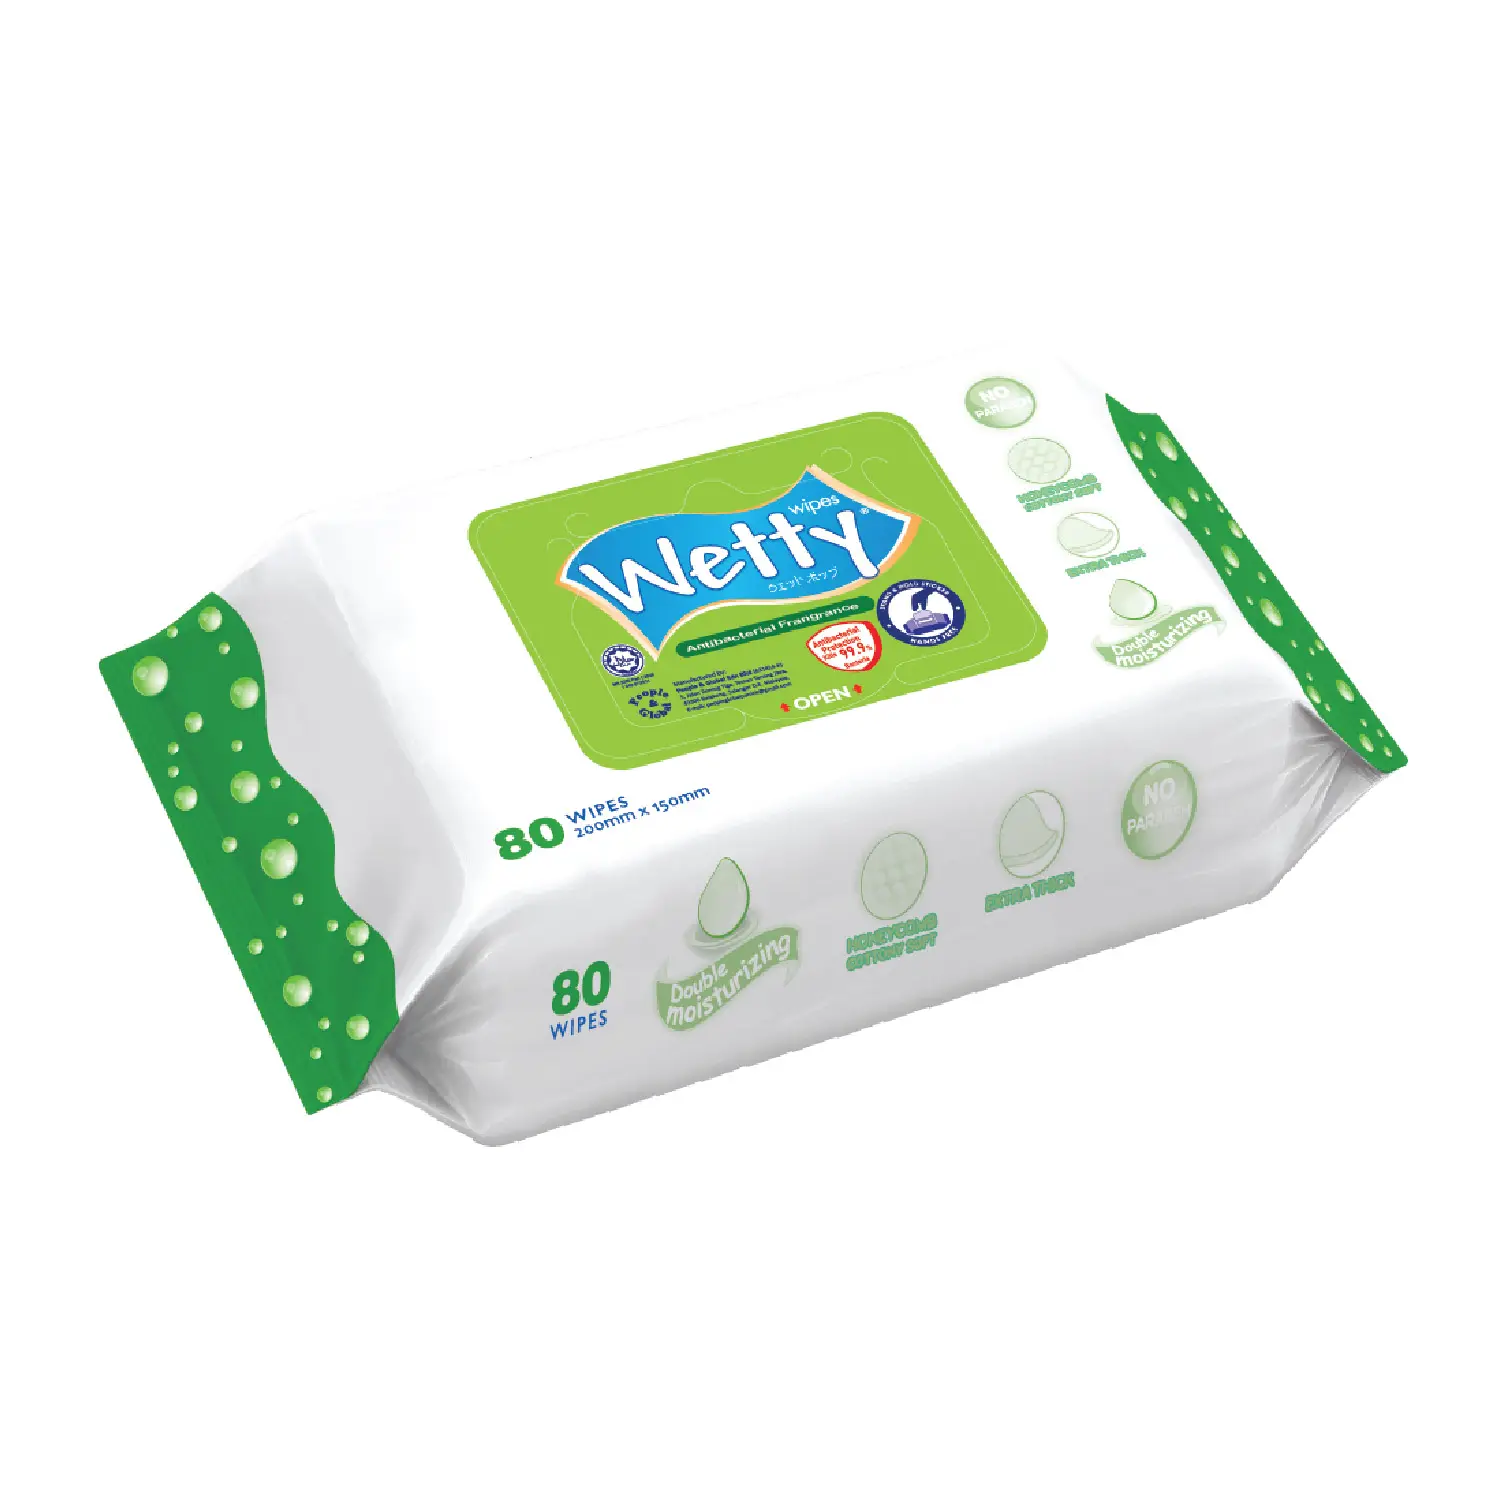 Emin kalite lal sertifikalı Wetty Wiep arındırıcı temizleme wifragrance koku ücretsiz ve koku 80'S Spunlace malzemeden yapılmış